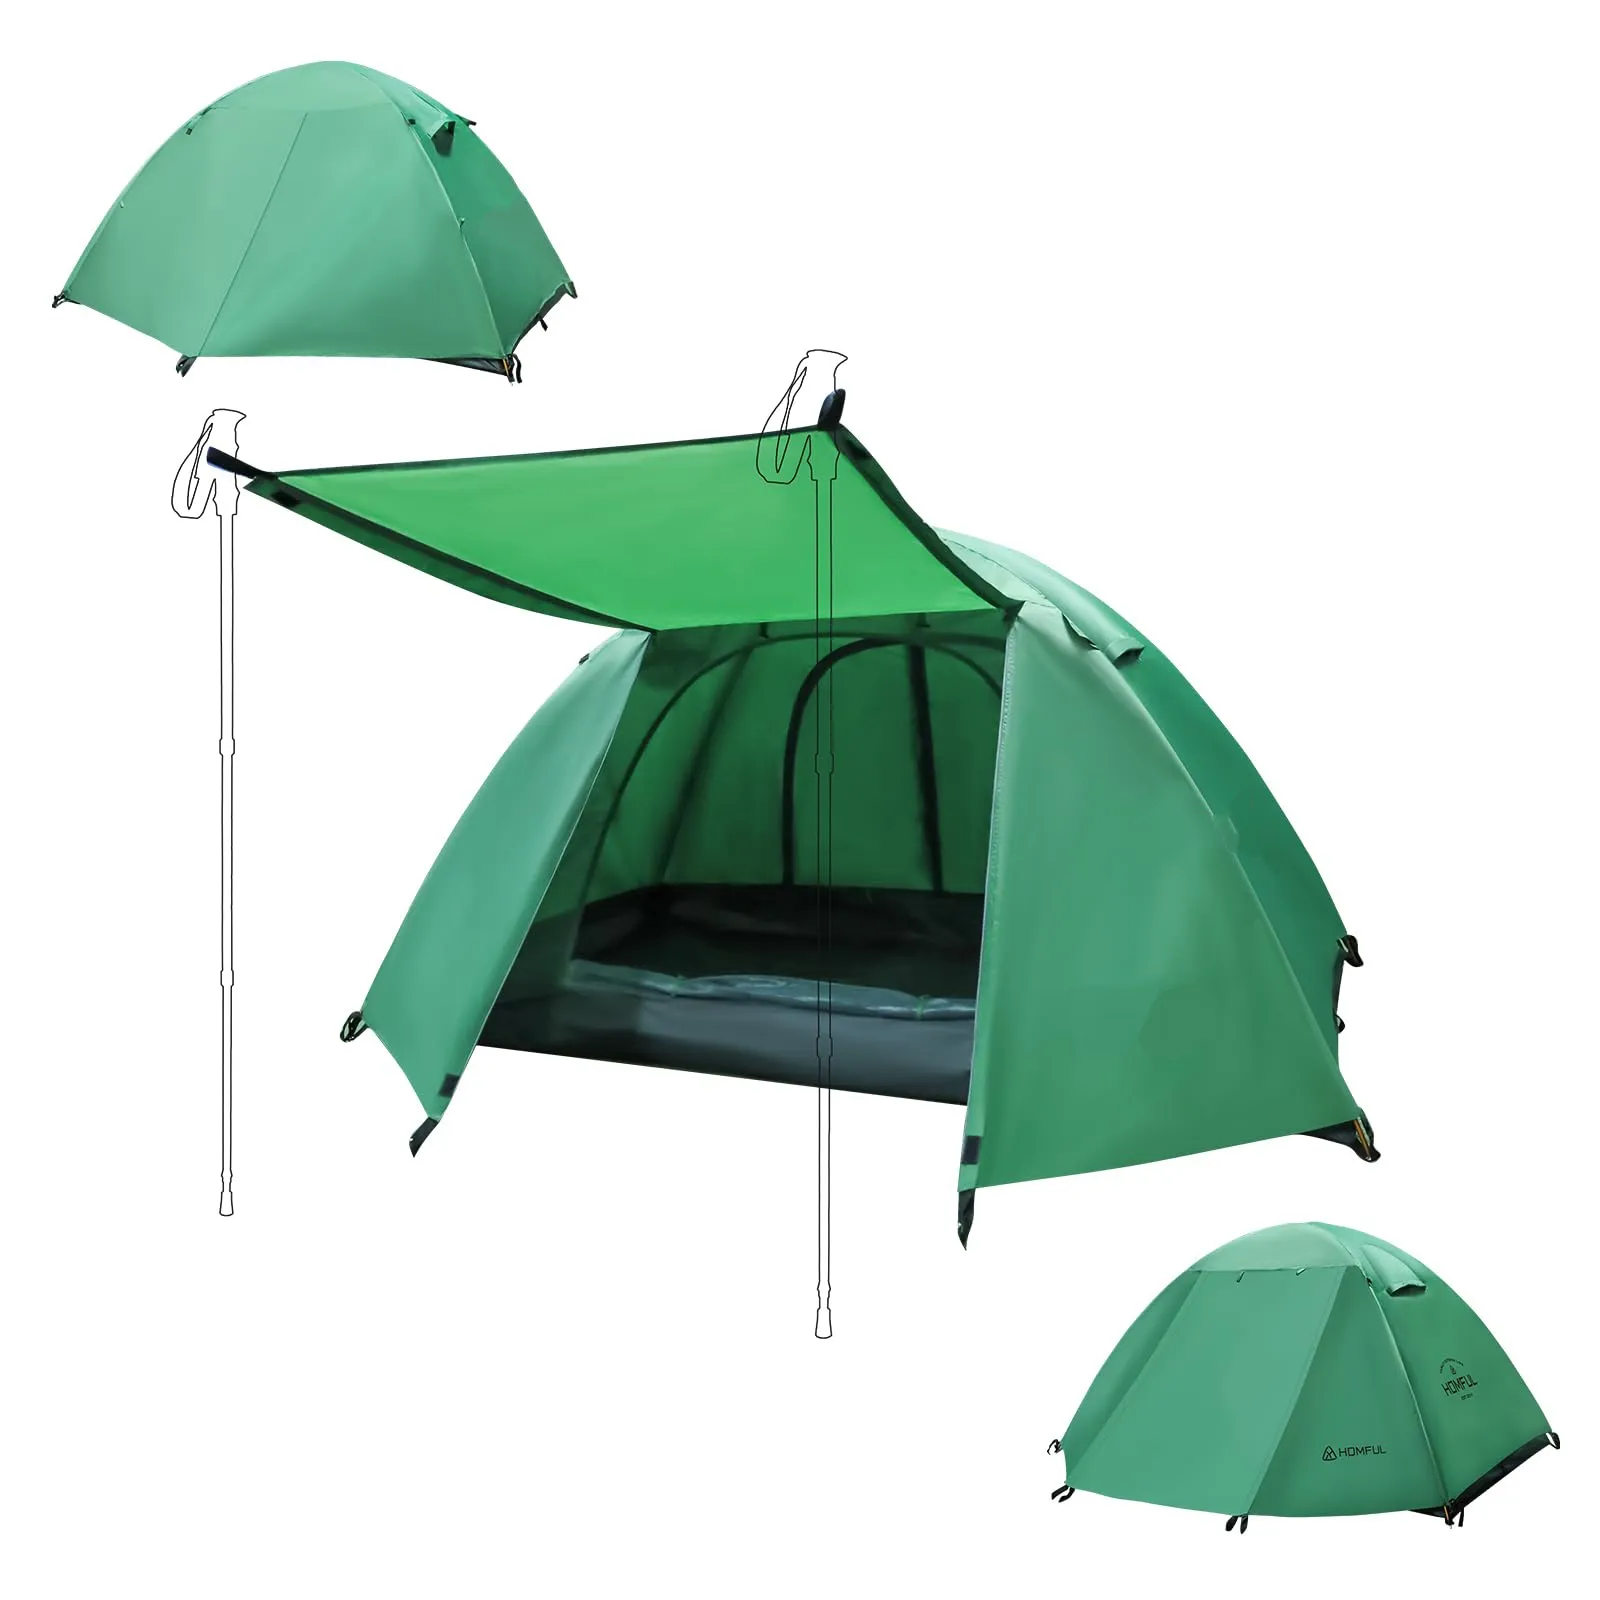 Tente de randonnée imperméable ultra légère pour 1 personne, grande taille, facile à installer, pour le camping et l'extérieur.